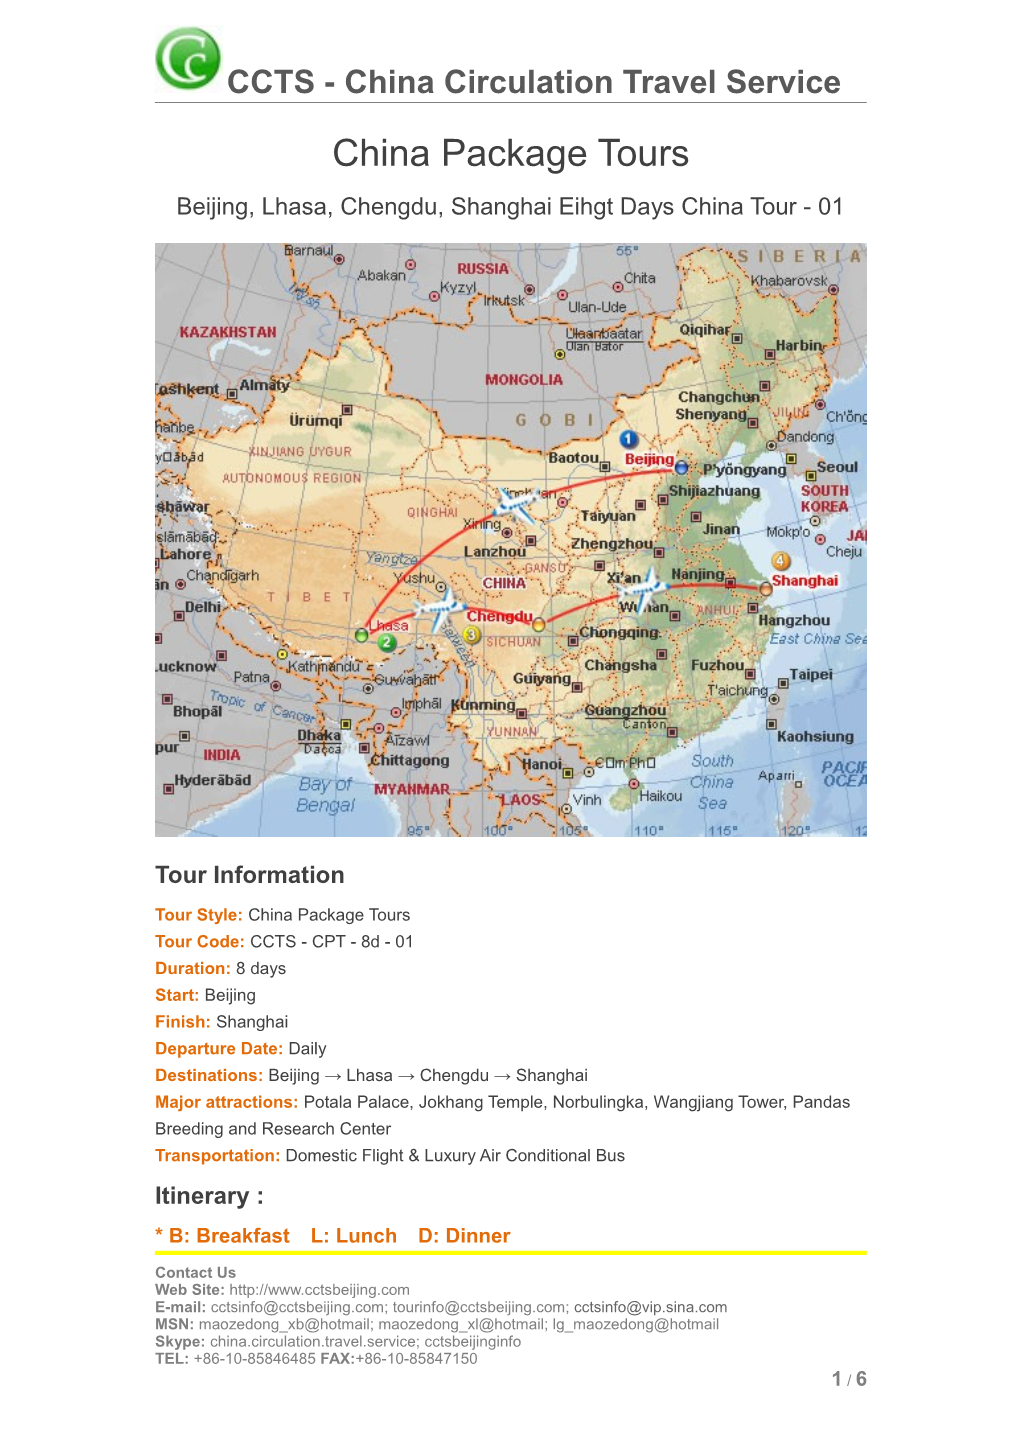 Beijing, Lhasa, Chengdu, Shanghai Eihgt Days China Tour - 01